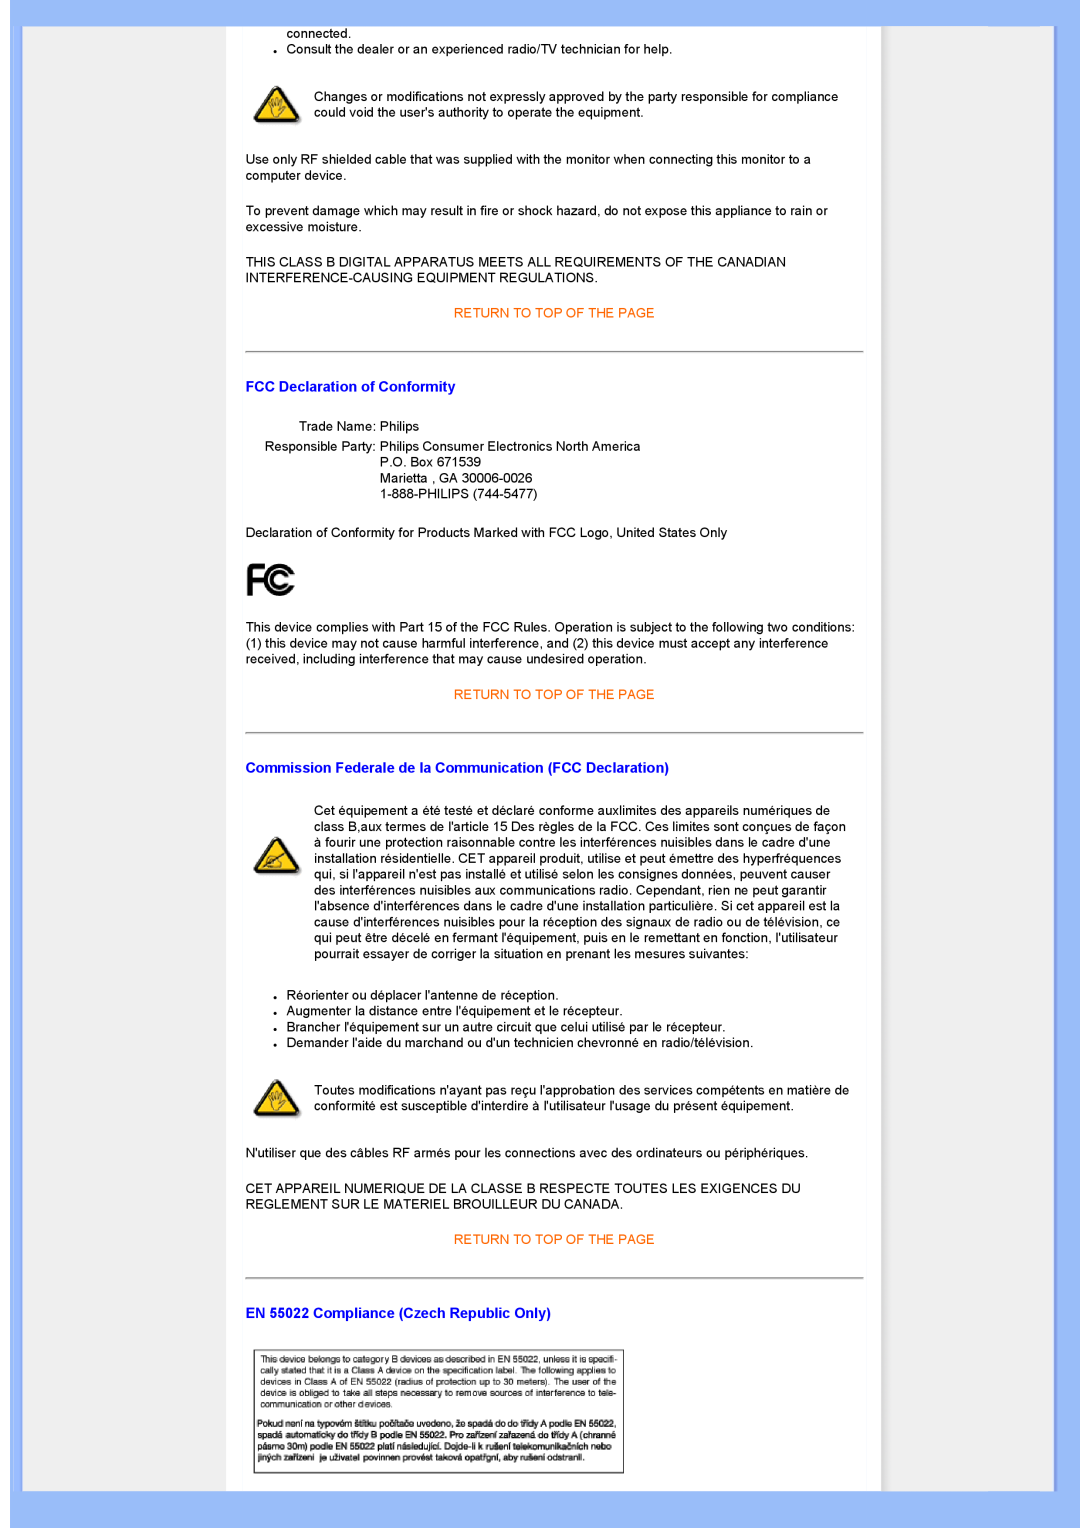 Univex 200BW8 user manual FCC Declaration of Conformity, Commission Federale de la Communication FCC Declaration 